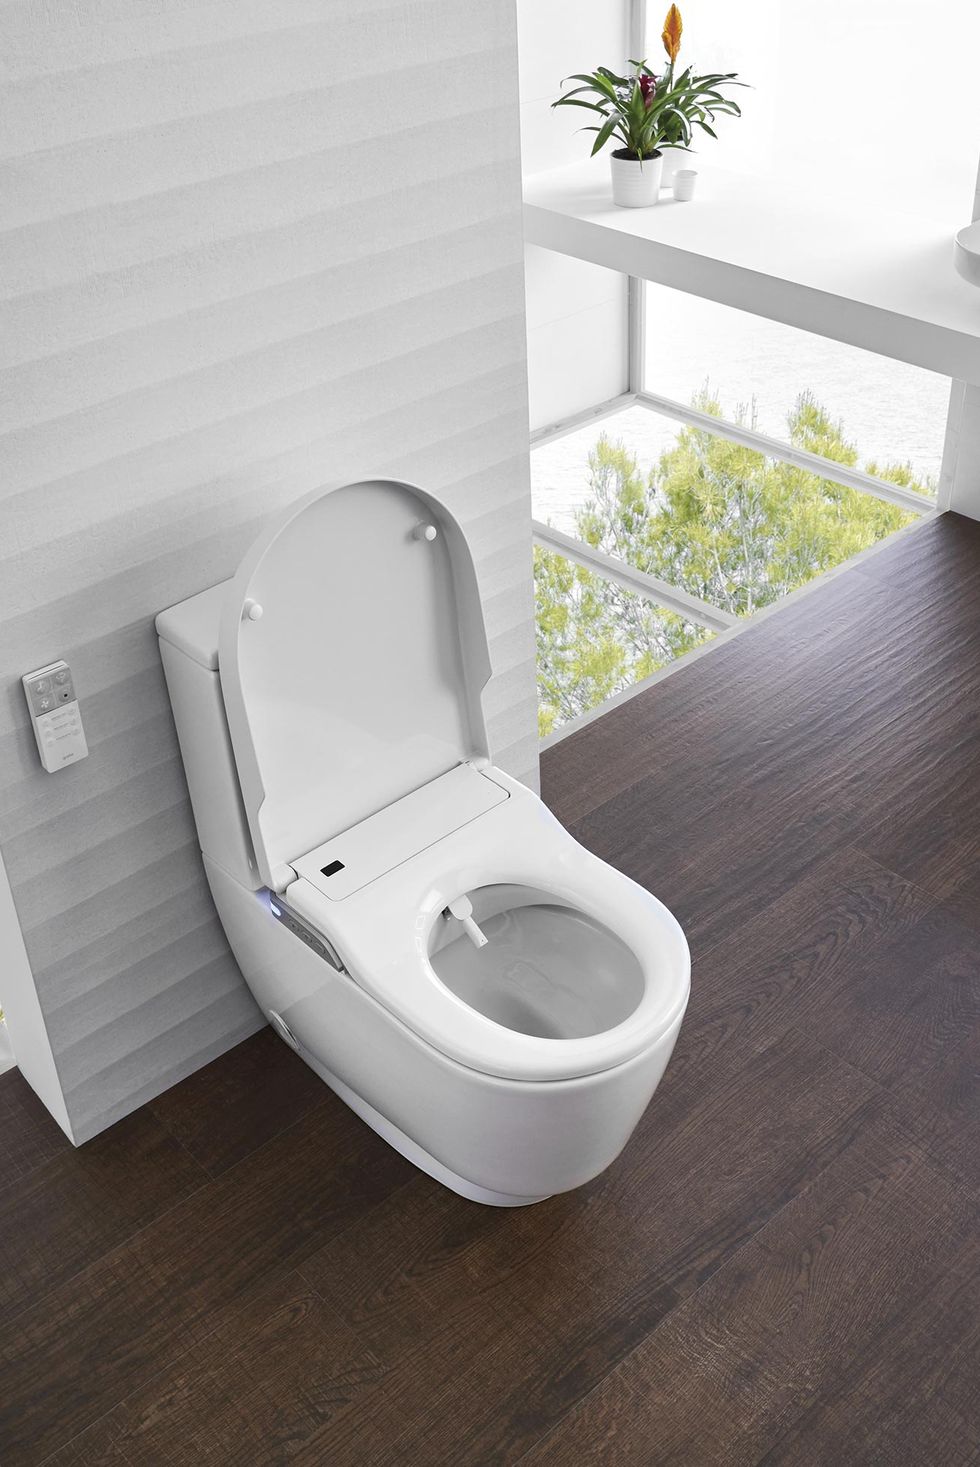 WC inteligentes: dificultades normativas y de seguridad al instalarlos si  los compras fuera de Europa